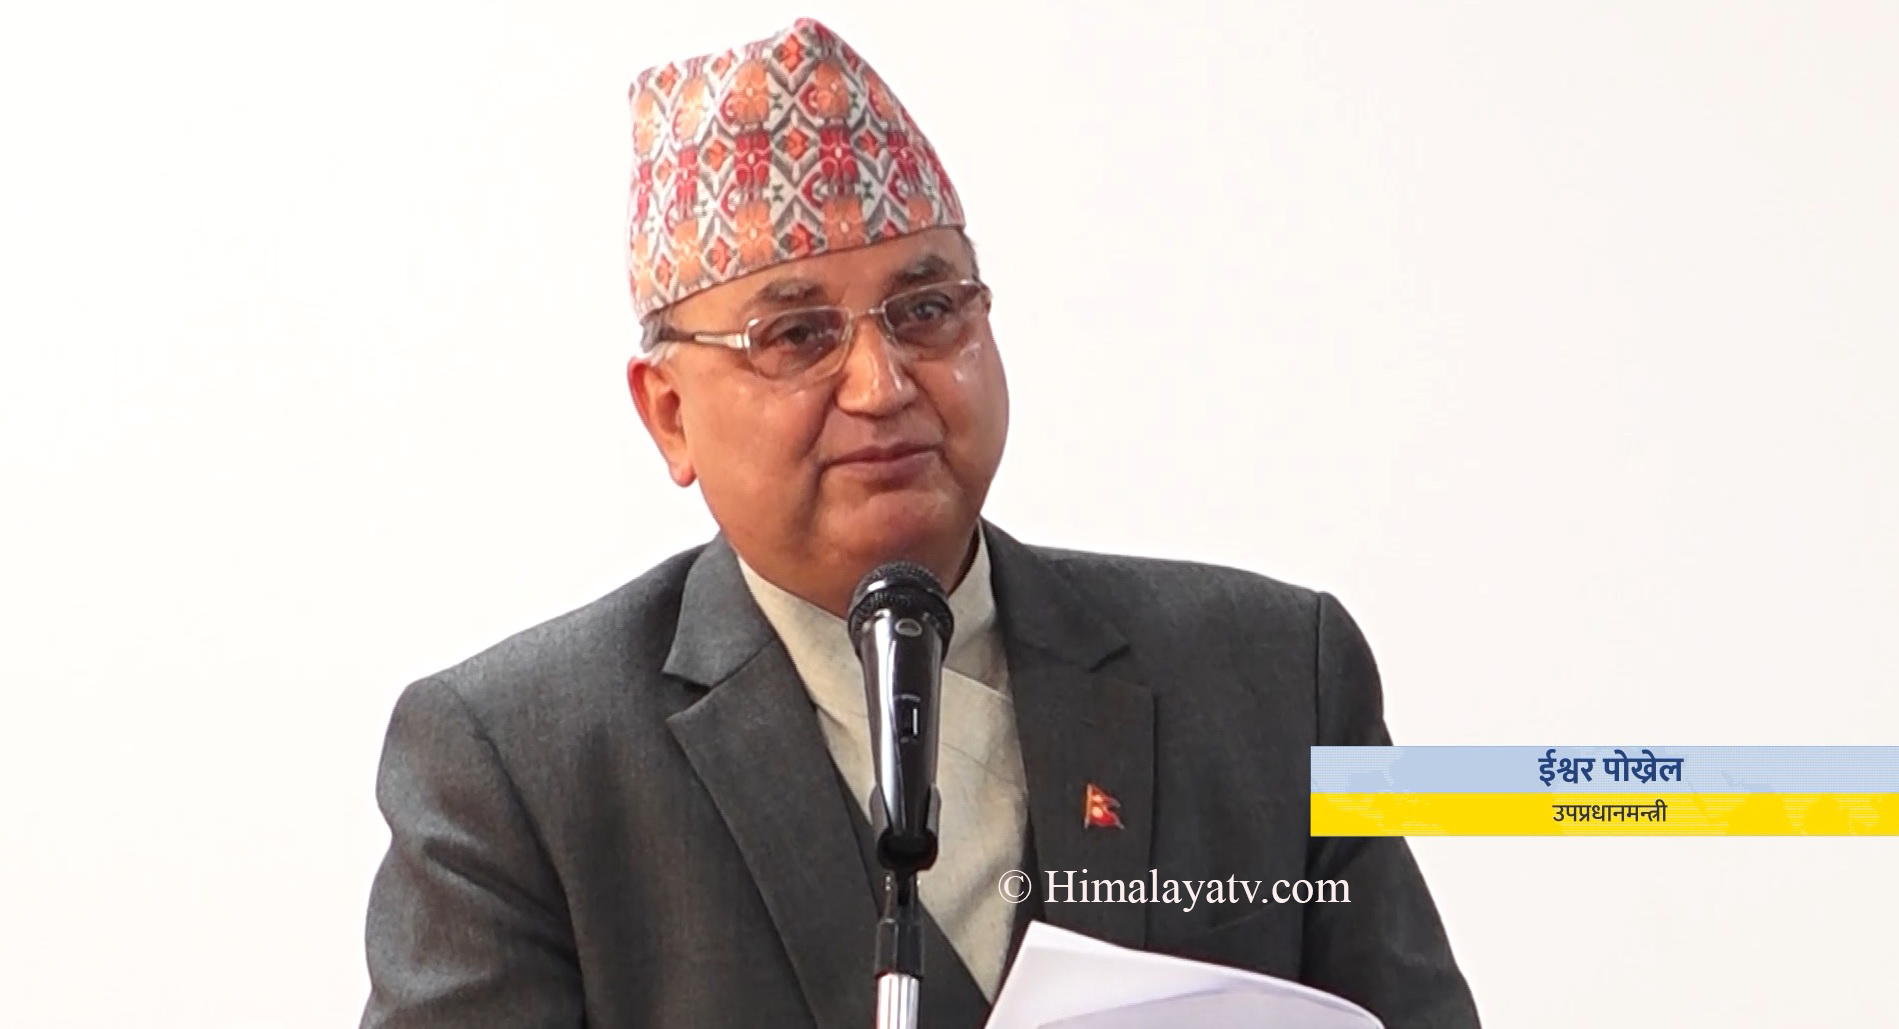 नेपाललाई दोस्रो अध्यक्ष बनाउने प्रस्तावमा महासचिव पोखरेल असन्तुष्ट (भिडियो रिपोर्टसहित)